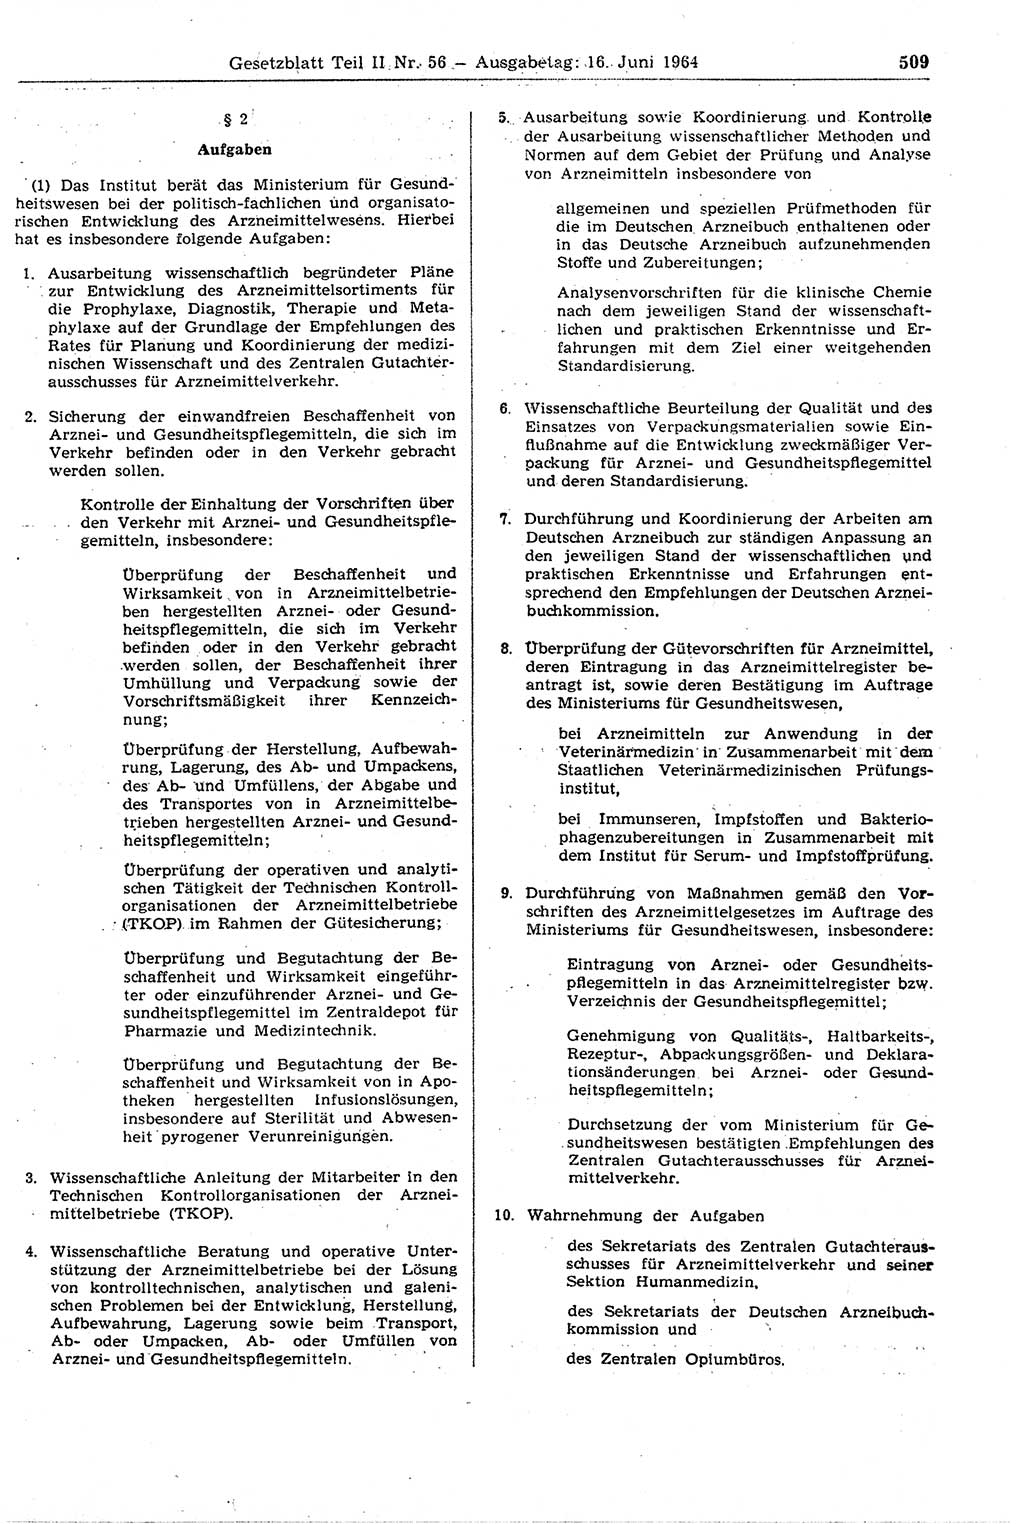 Gesetzblatt (GBl.) der Deutschen Demokratischen Republik (DDR) Teil ⅠⅠ 1964, Seite 509 (GBl. DDR ⅠⅠ 1964, S. 509)